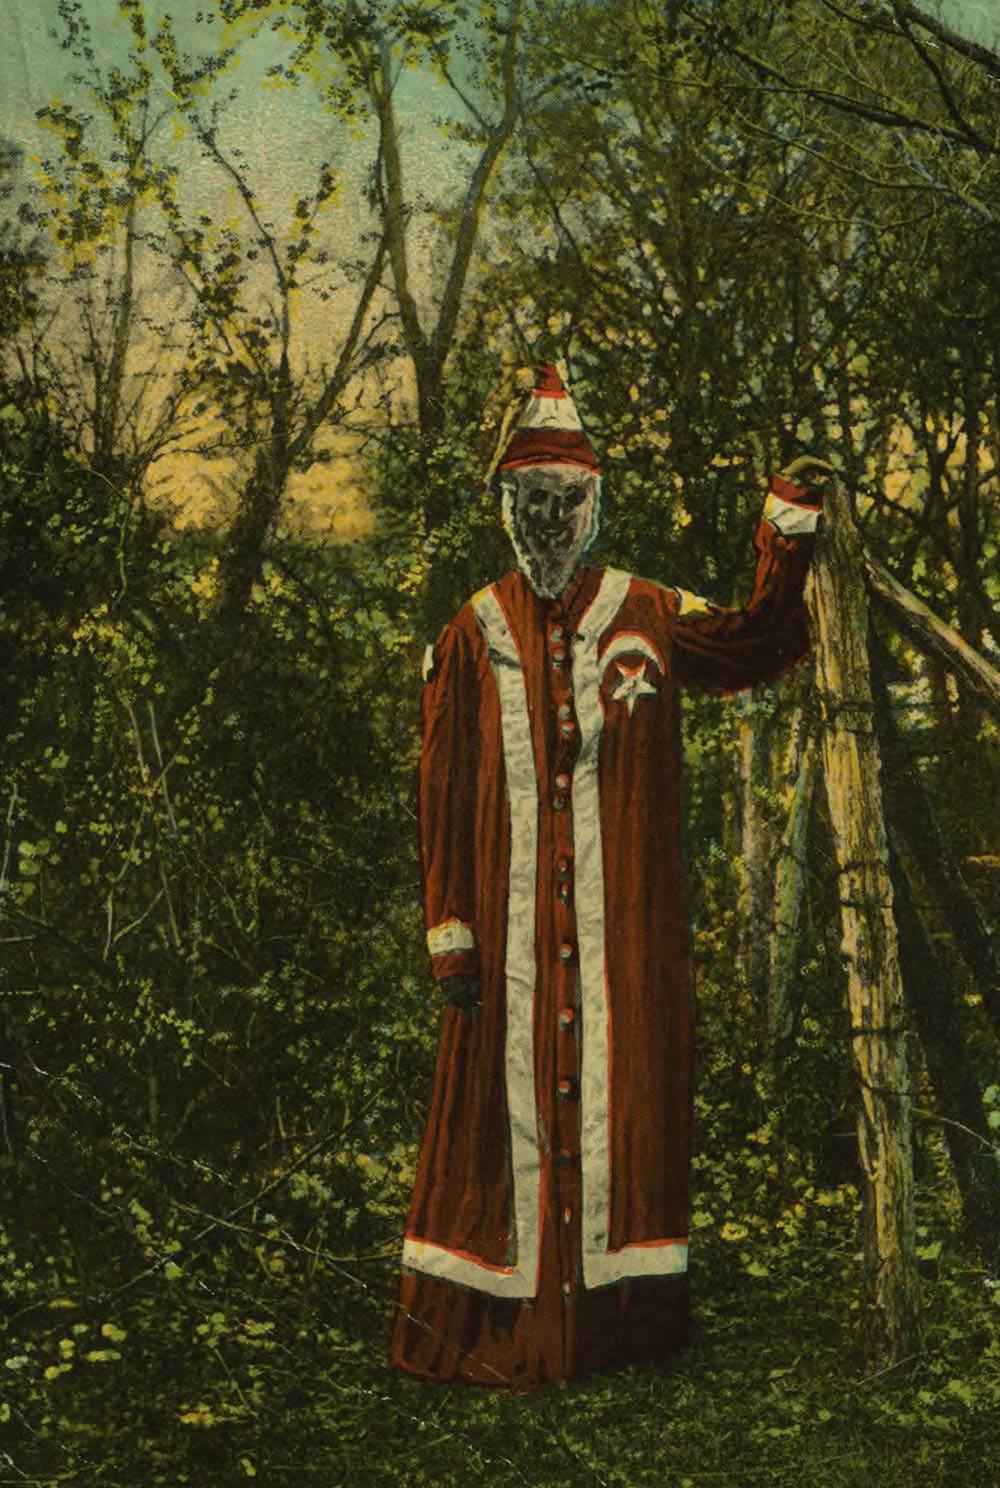 Postcard of an original Ku Klux Klan costume, c. 1930.